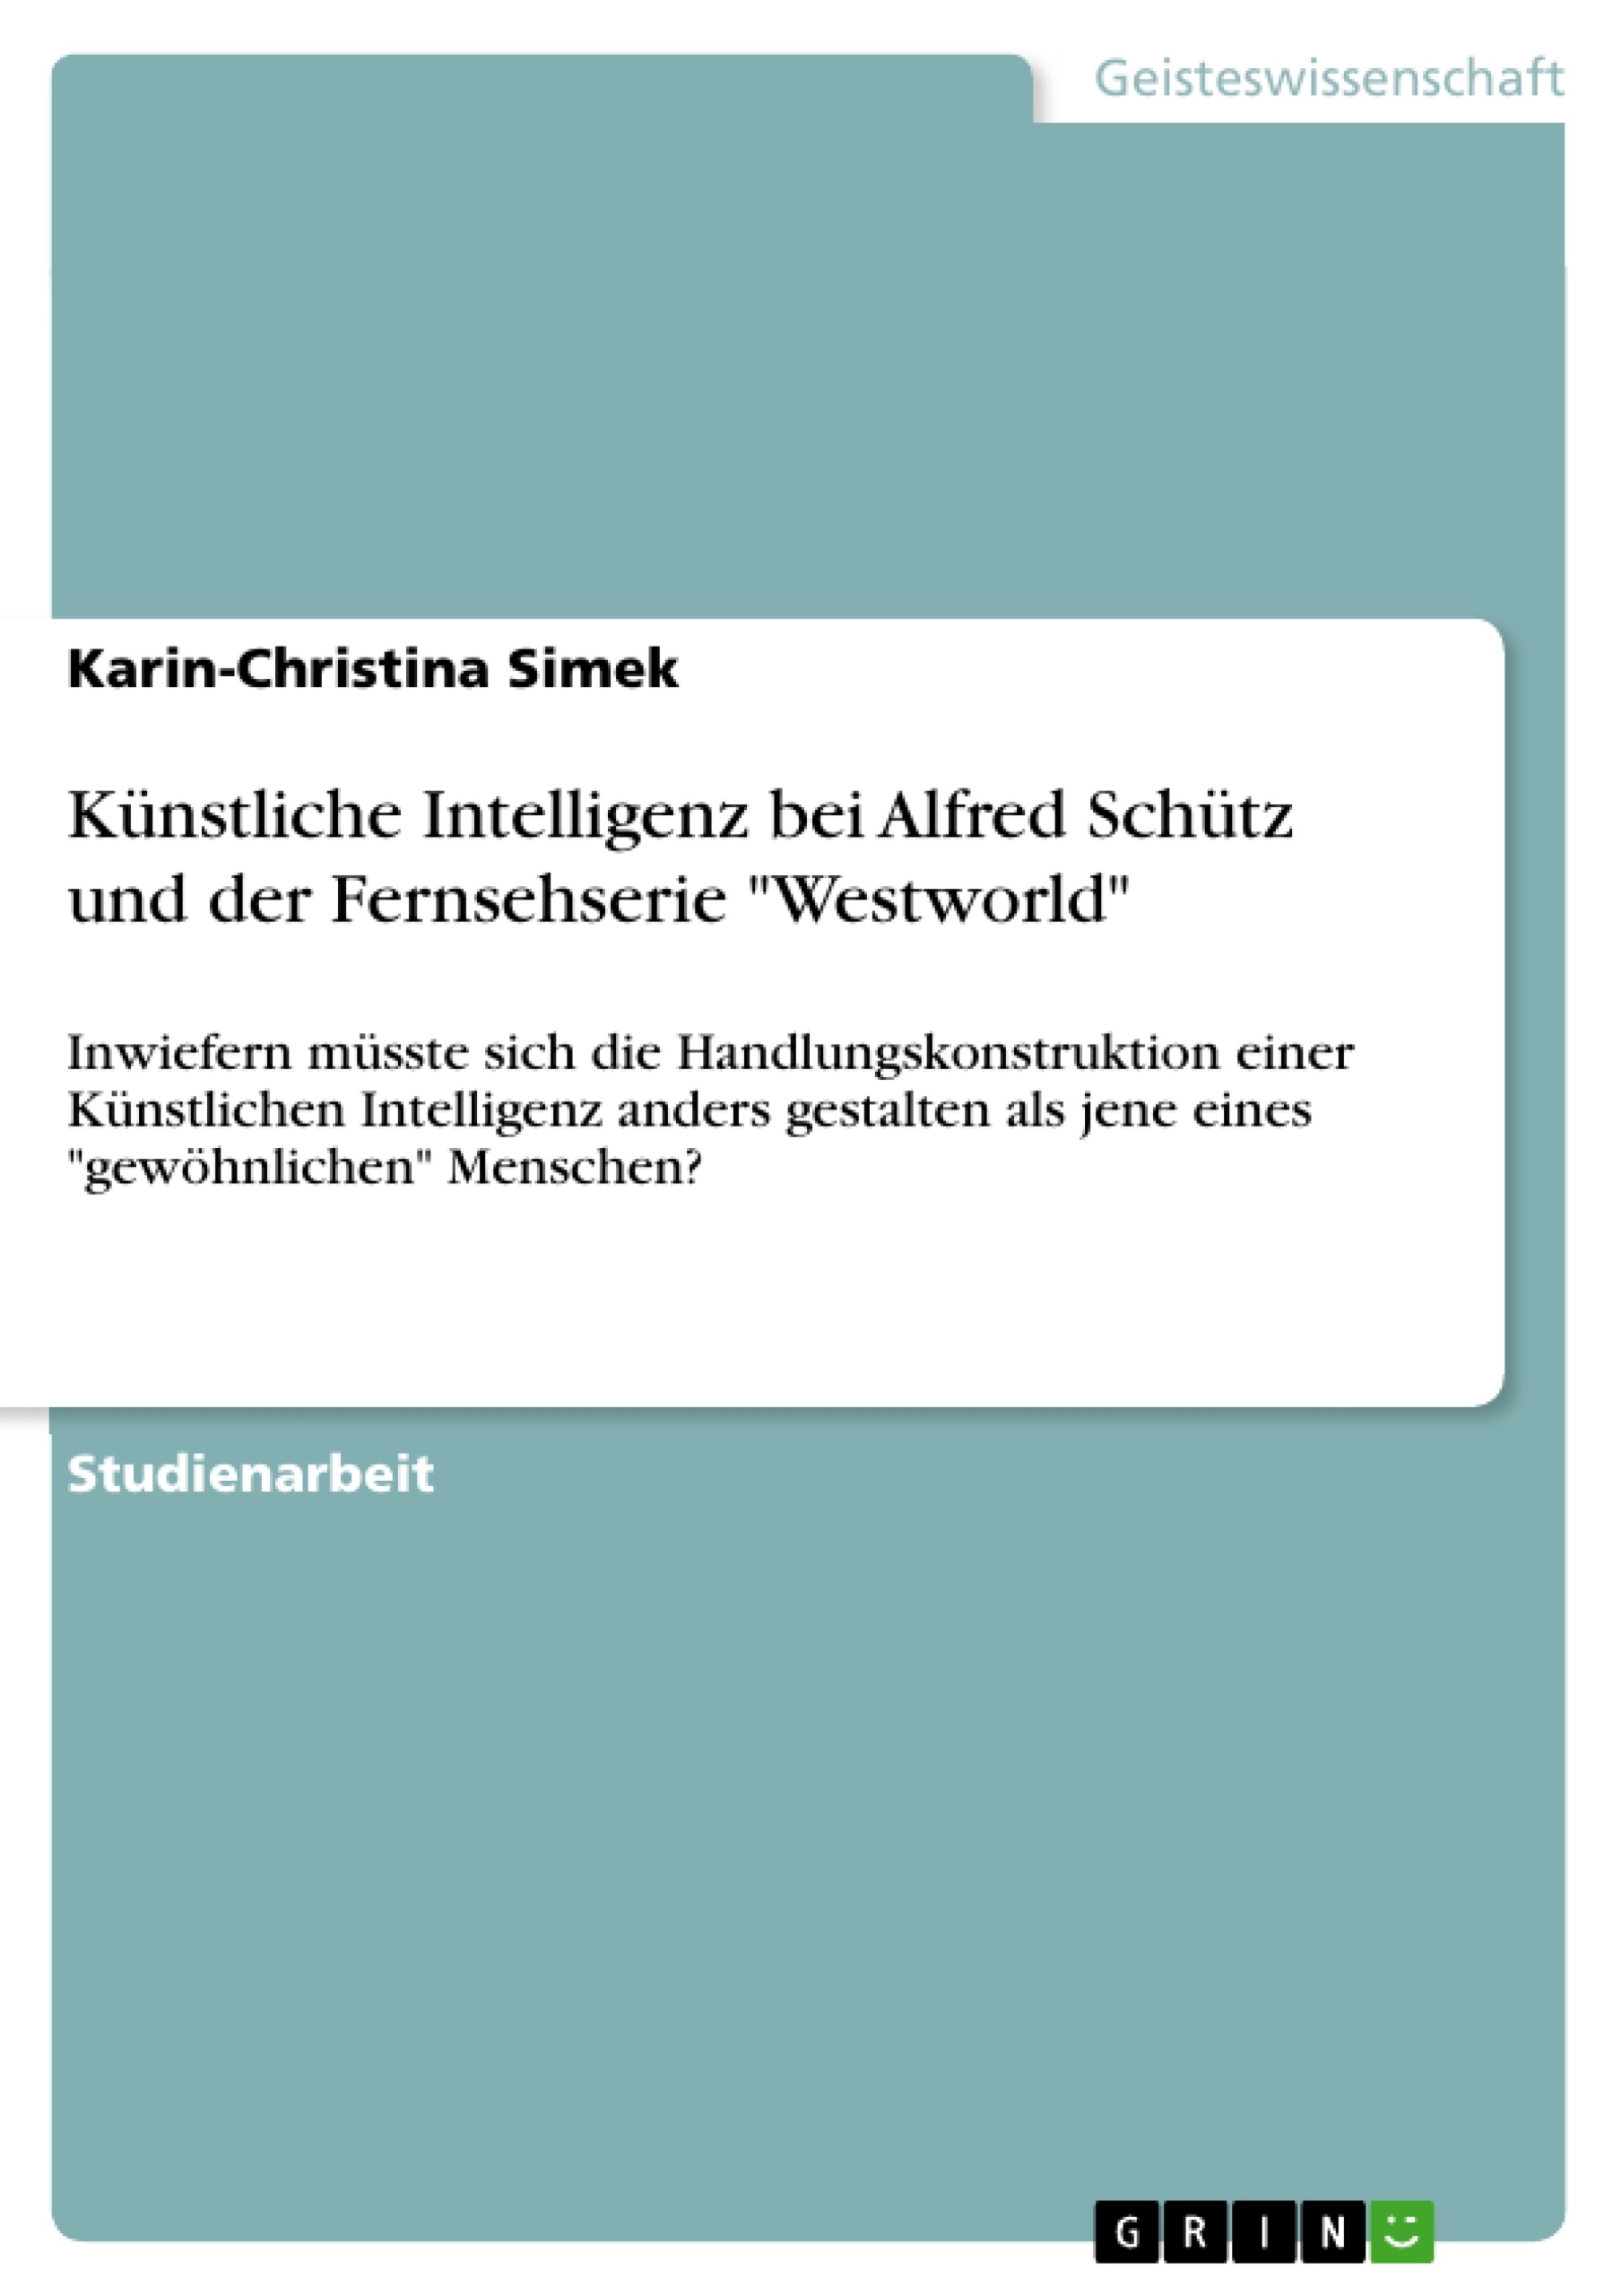 Título: Künstliche Intelligenz bei Alfred Schütz und der Fernsehserie "Westworld"